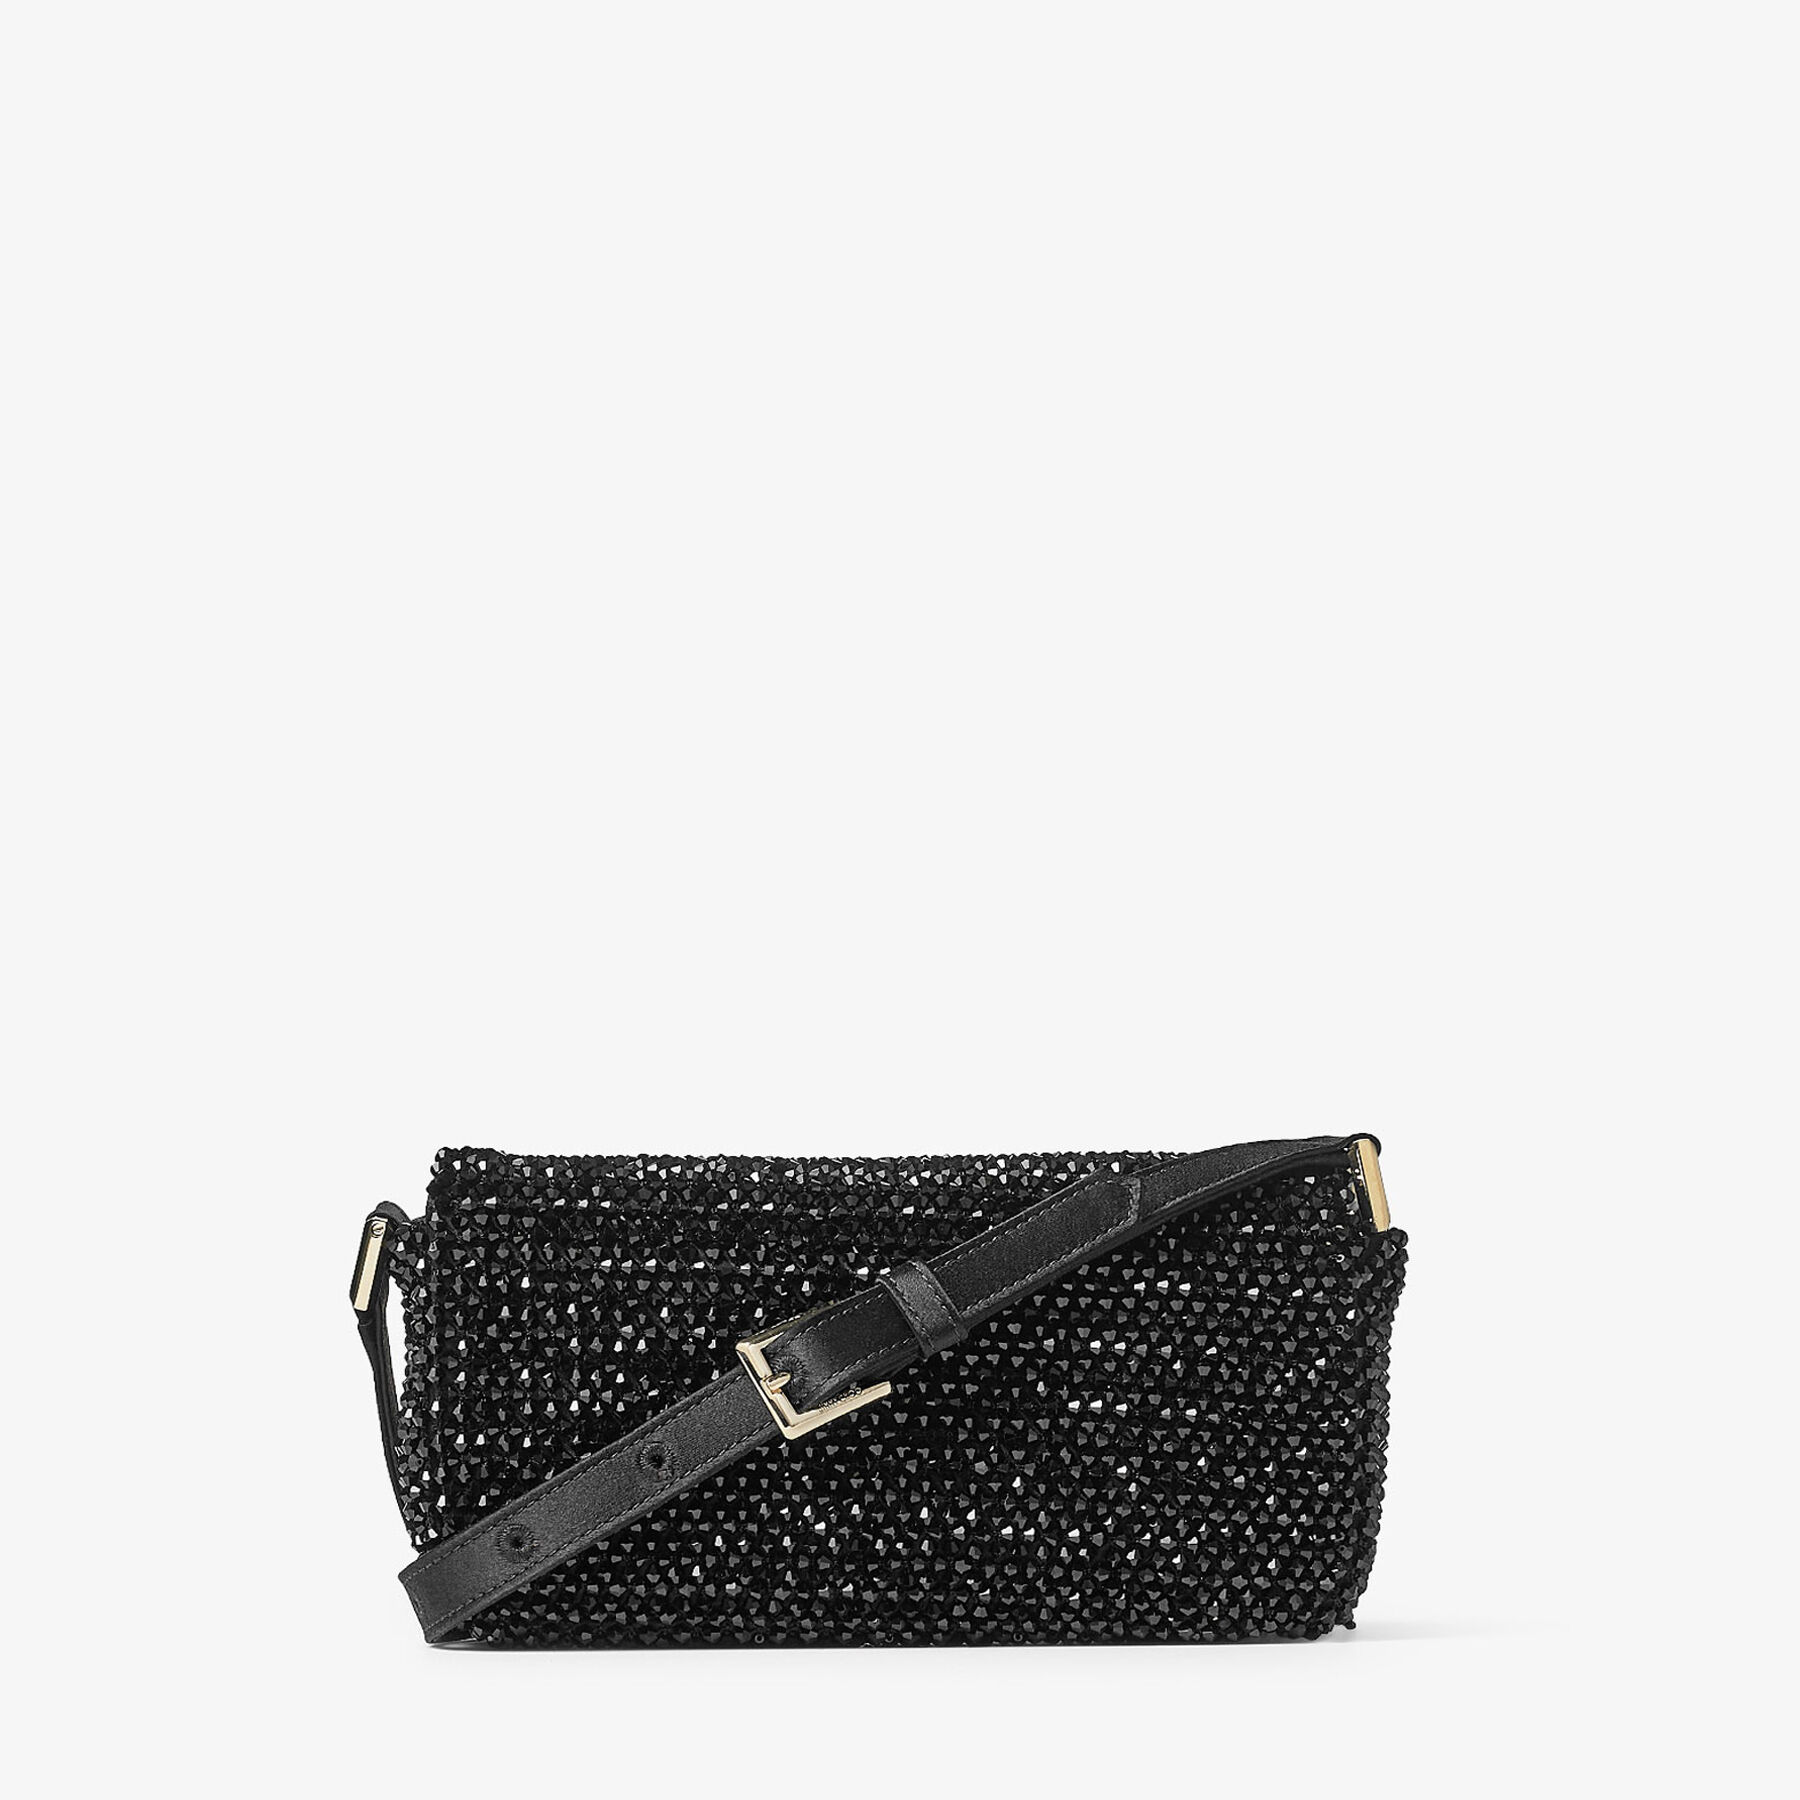 AVENUE MINI SHOULDER | Black Satin Mini Shoulder Bag with Crystal 